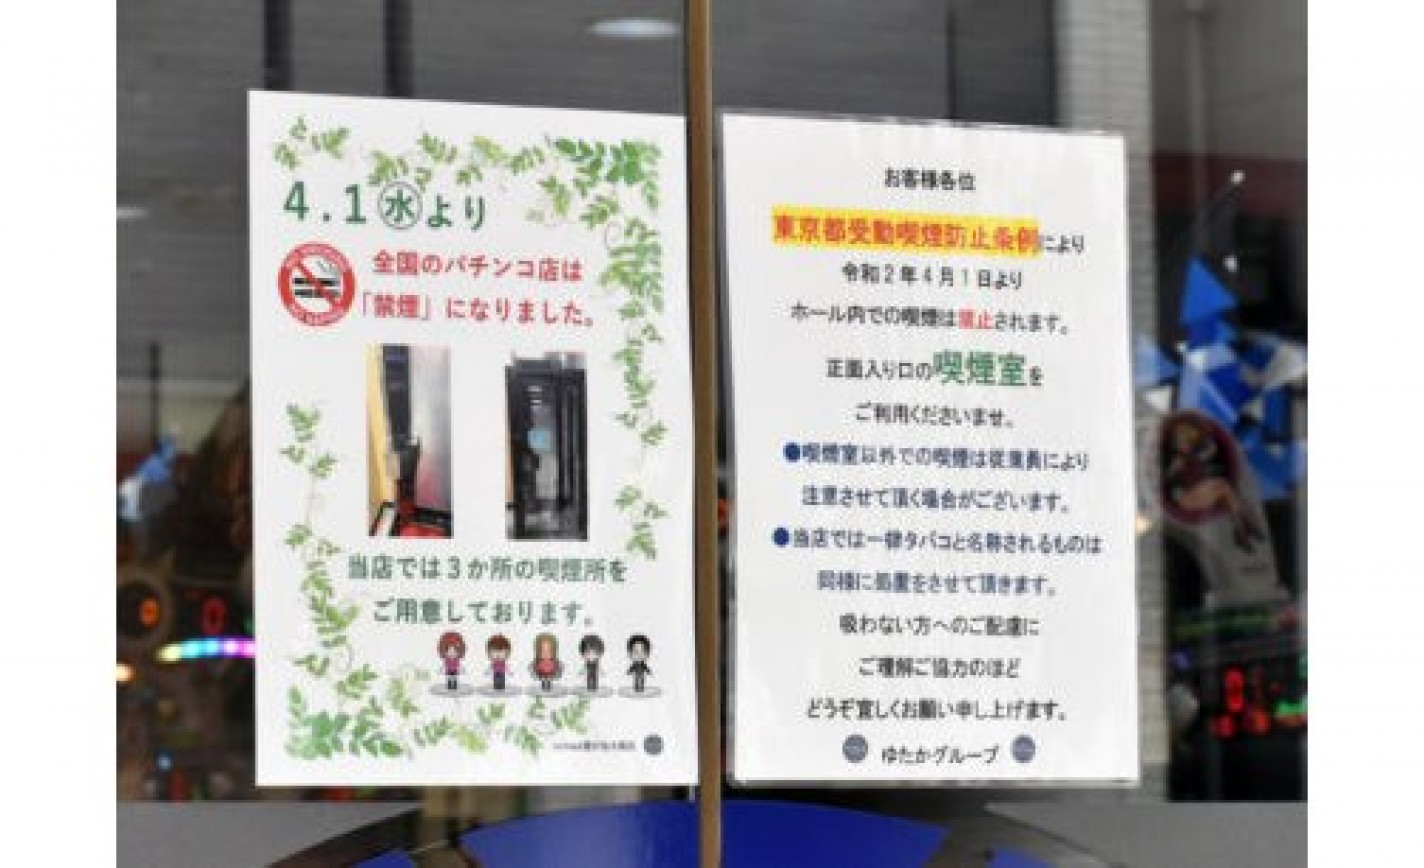 パチンコ店も屋内原則禁煙に、関係者「時代の流れで仕方がない」 eyecatch-image